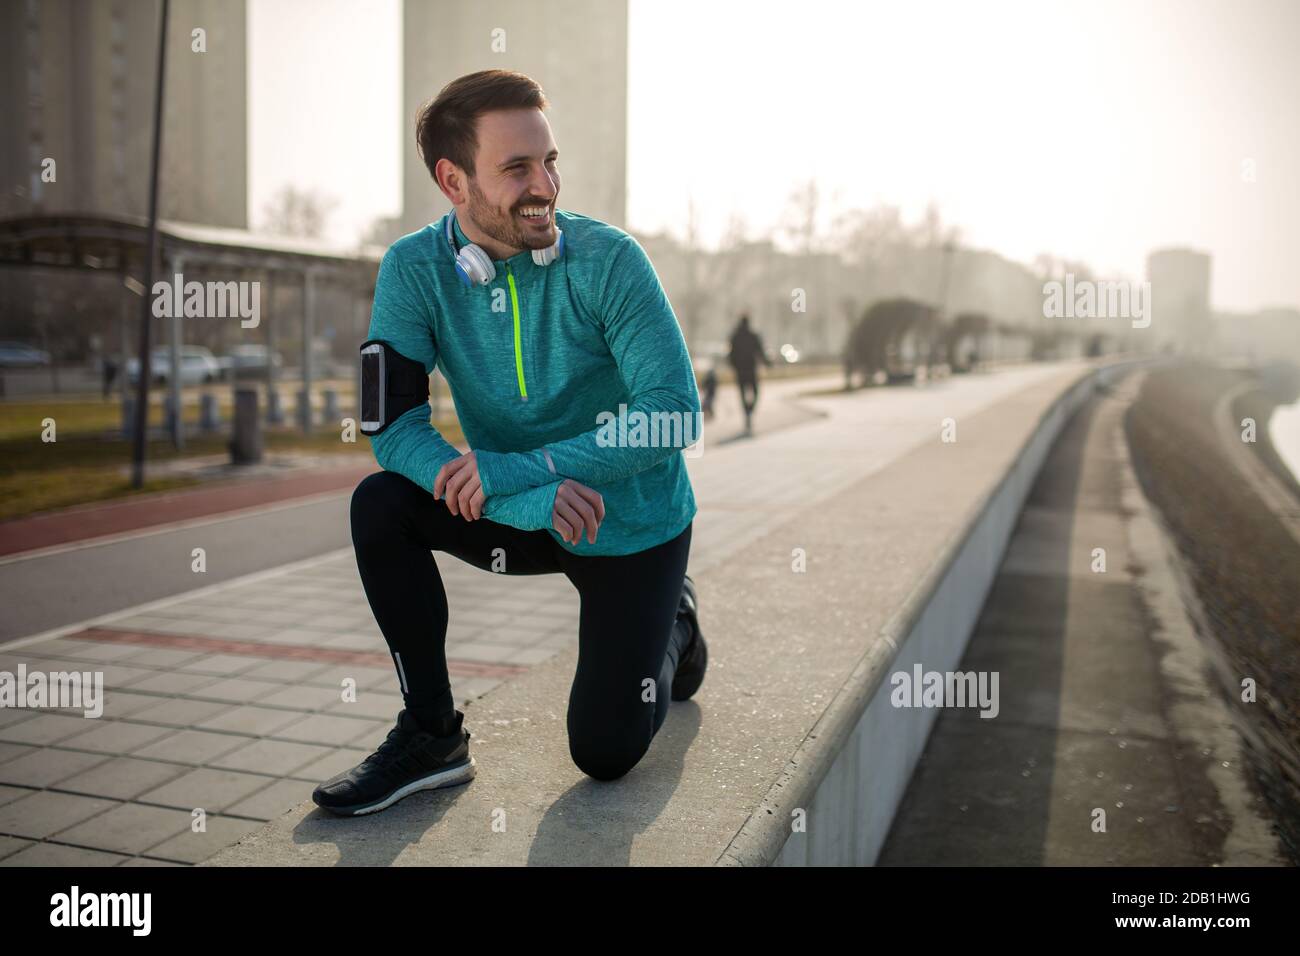 Giorno di partenza dal jog di mattina. Sport Running persone sano stile di vita concetto. Foto Stock